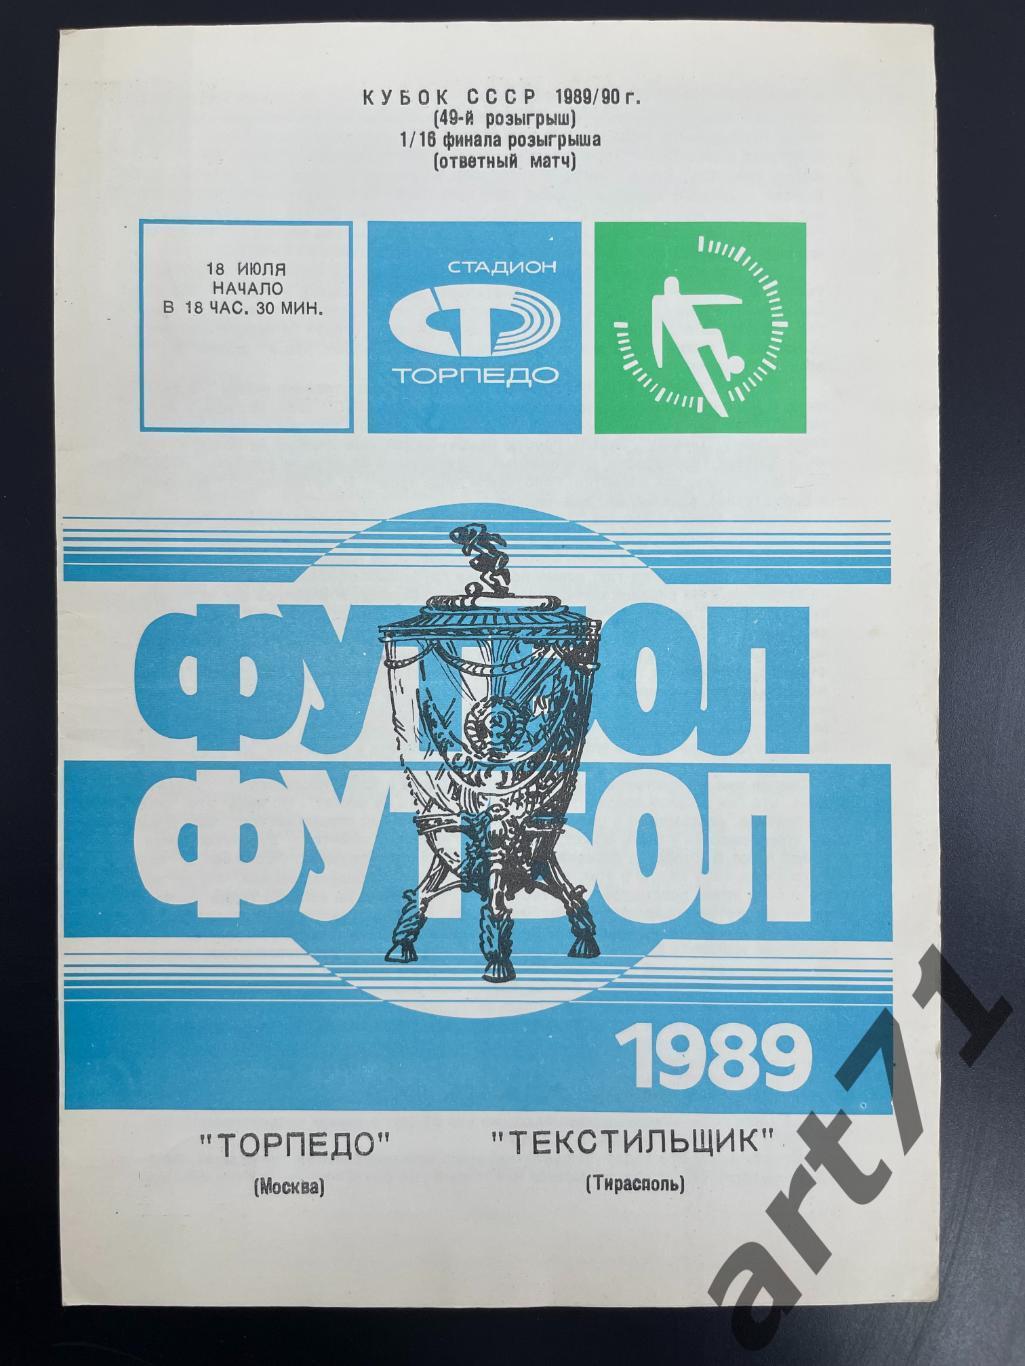 Торпедо Москва - Текстильщик Тирасполь 1989 кубок СССР